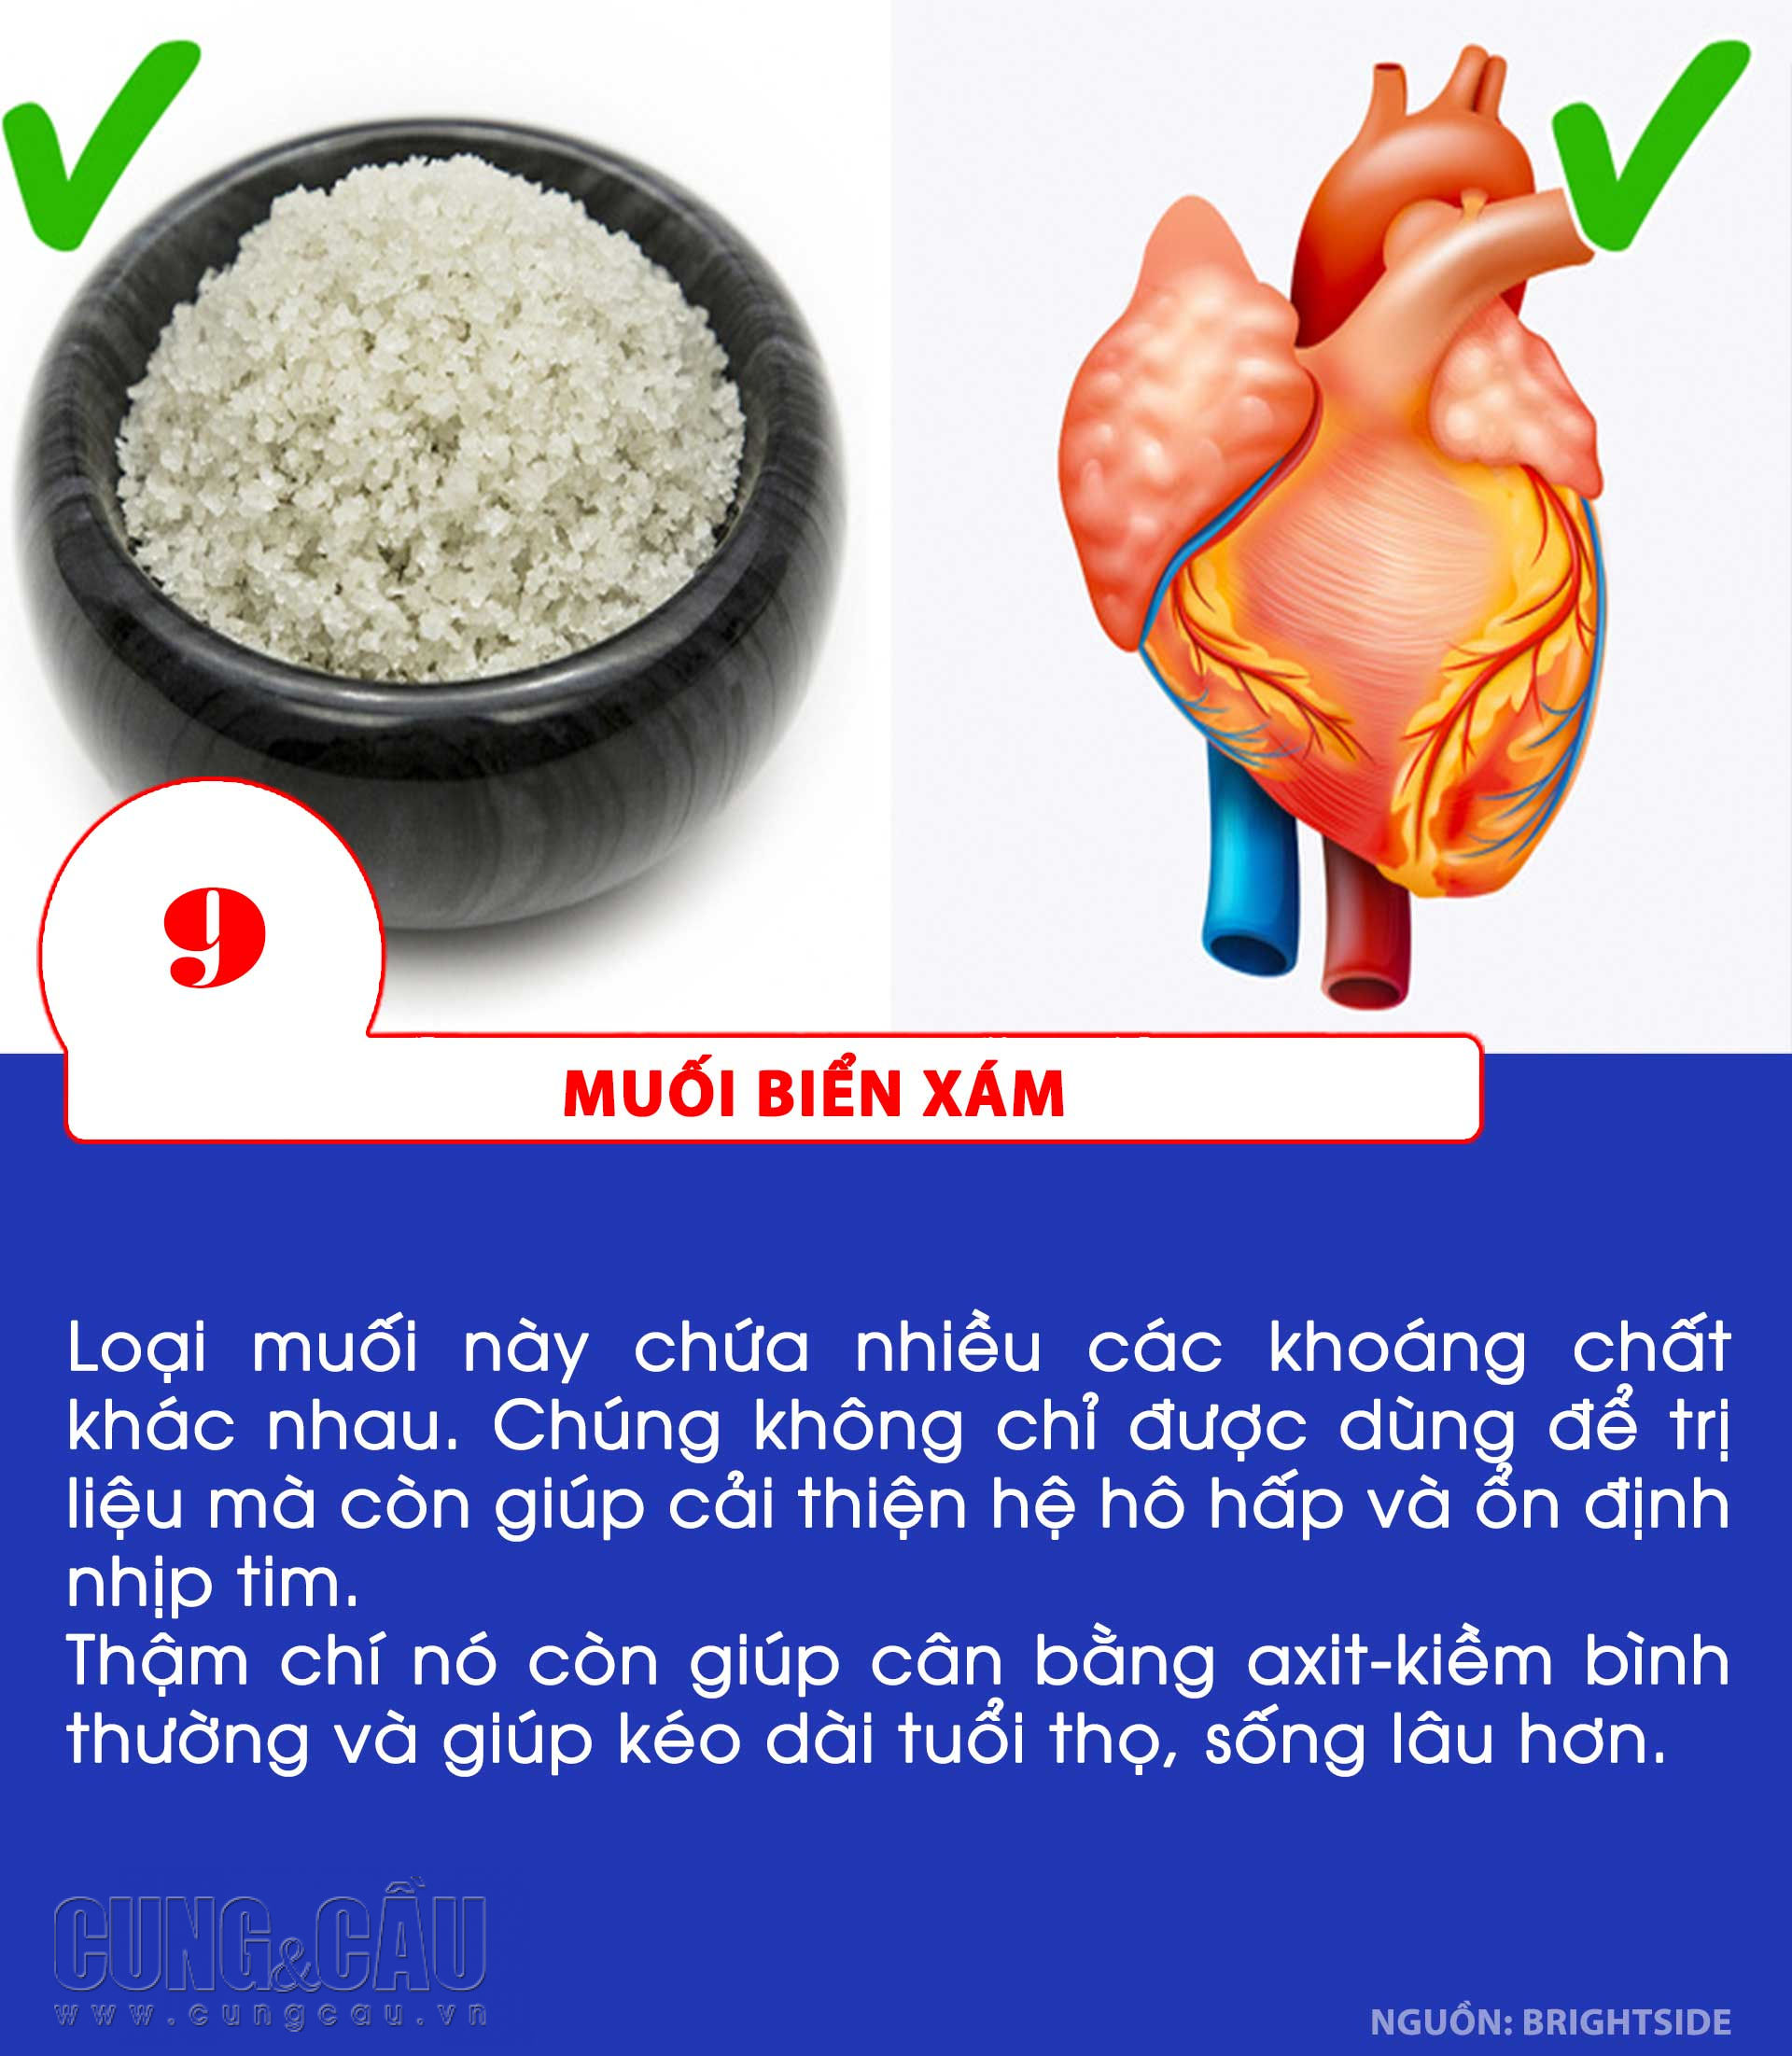 10 công dụng của muối giúp ích cho sức khỏe cơ thể